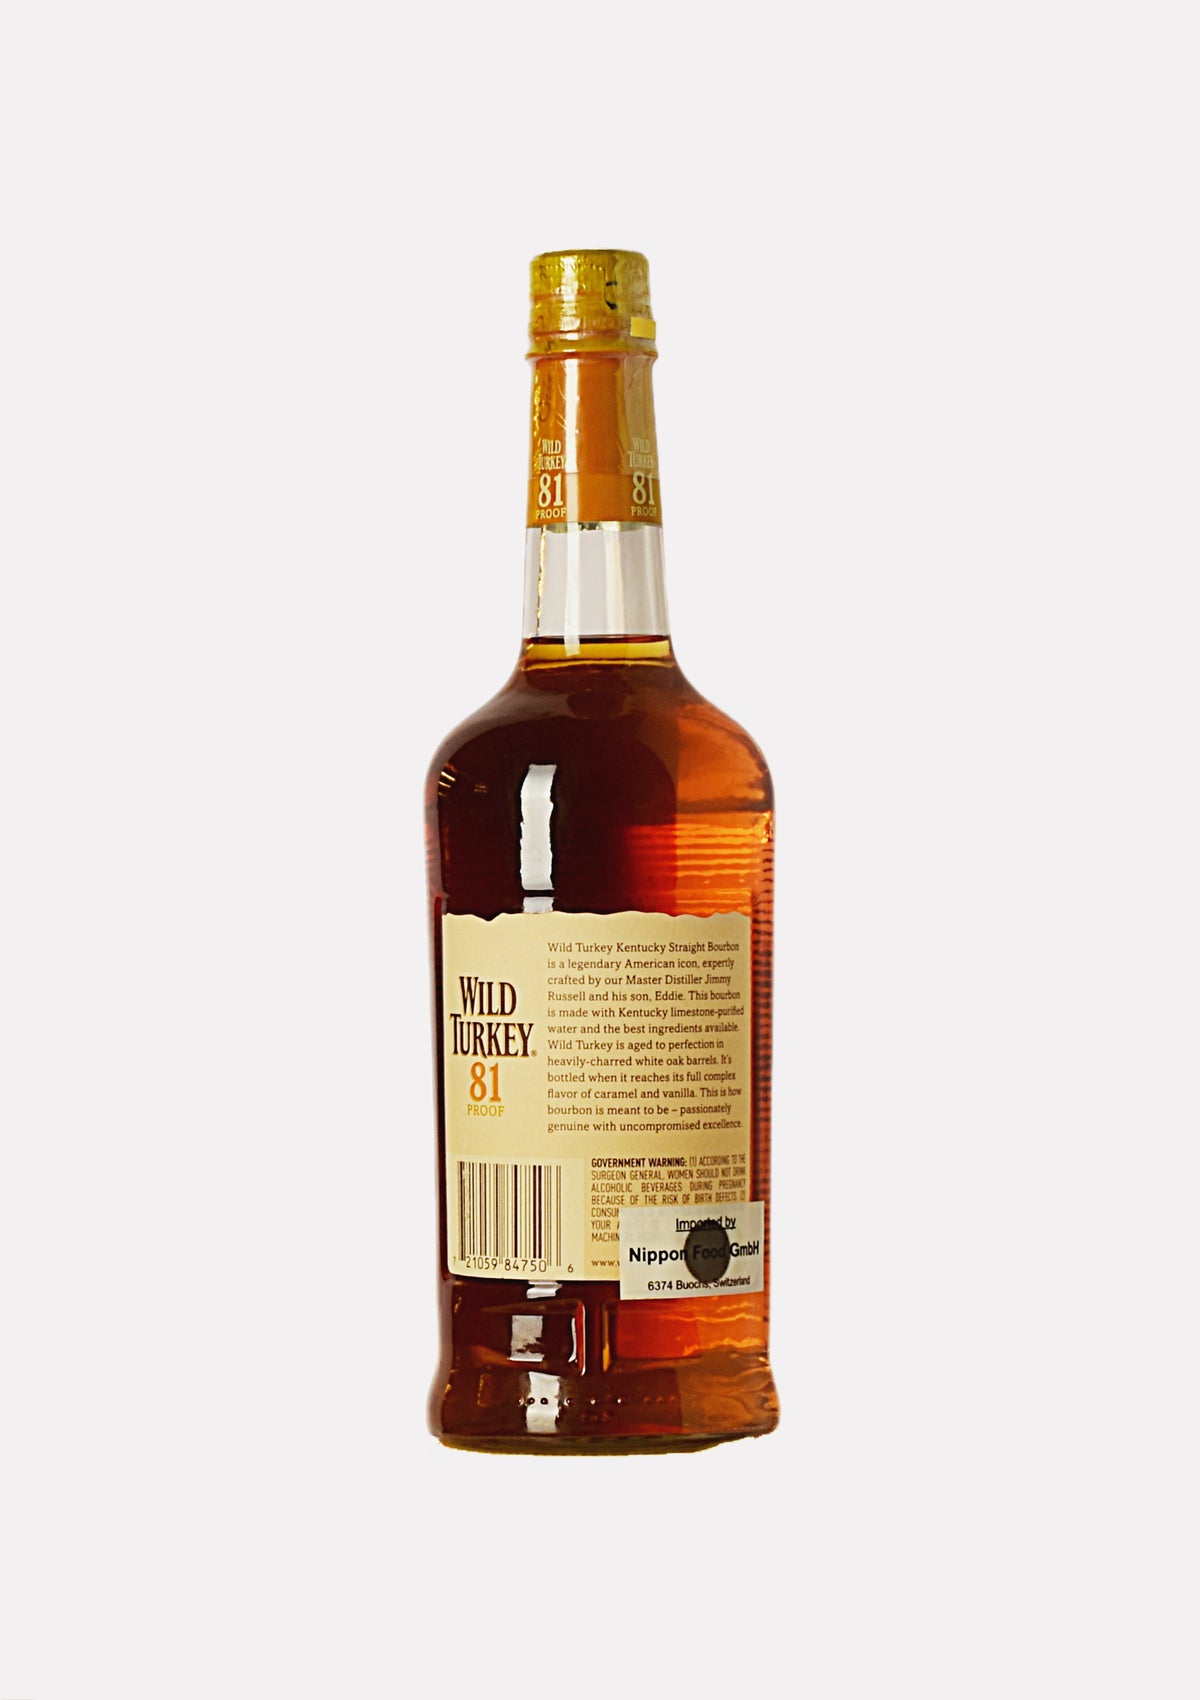 Wild Turkey 81 Kentucky Straight Bourbon Whiskey